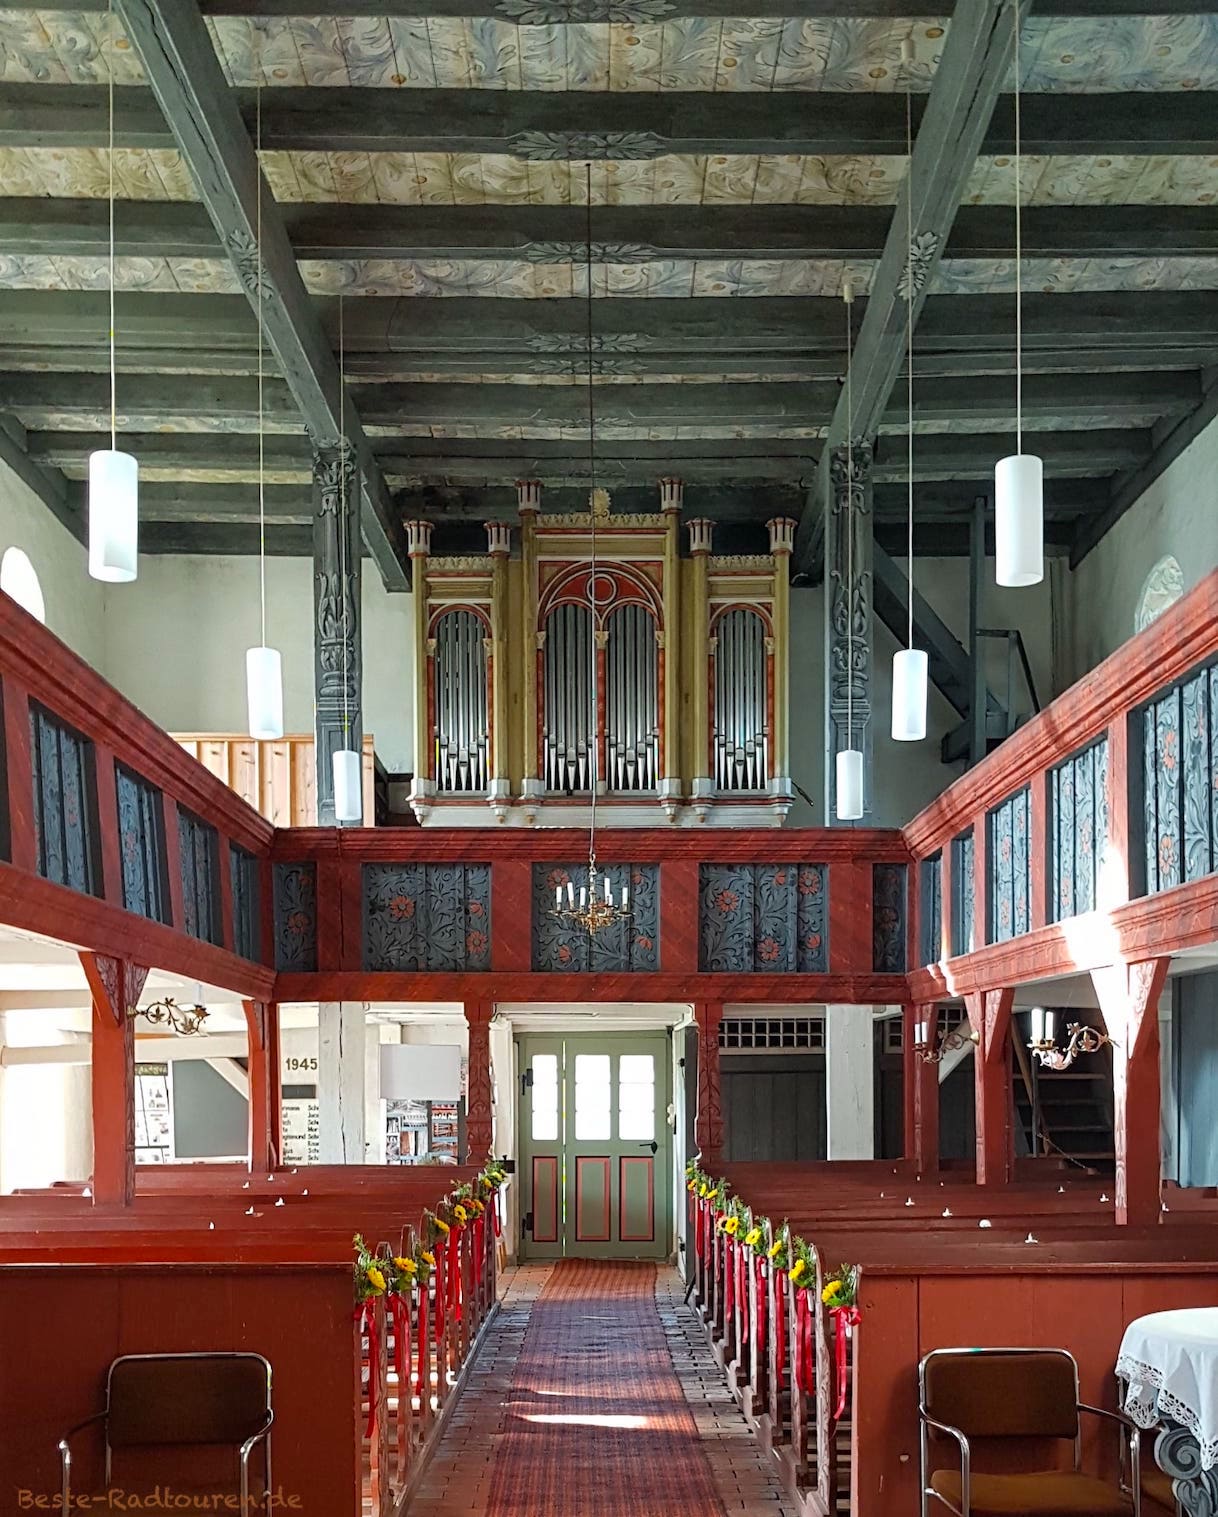 Dorfkirche Raben, Foto innen: Deckenmalereien, Gestaltung der Empore, der Orgel